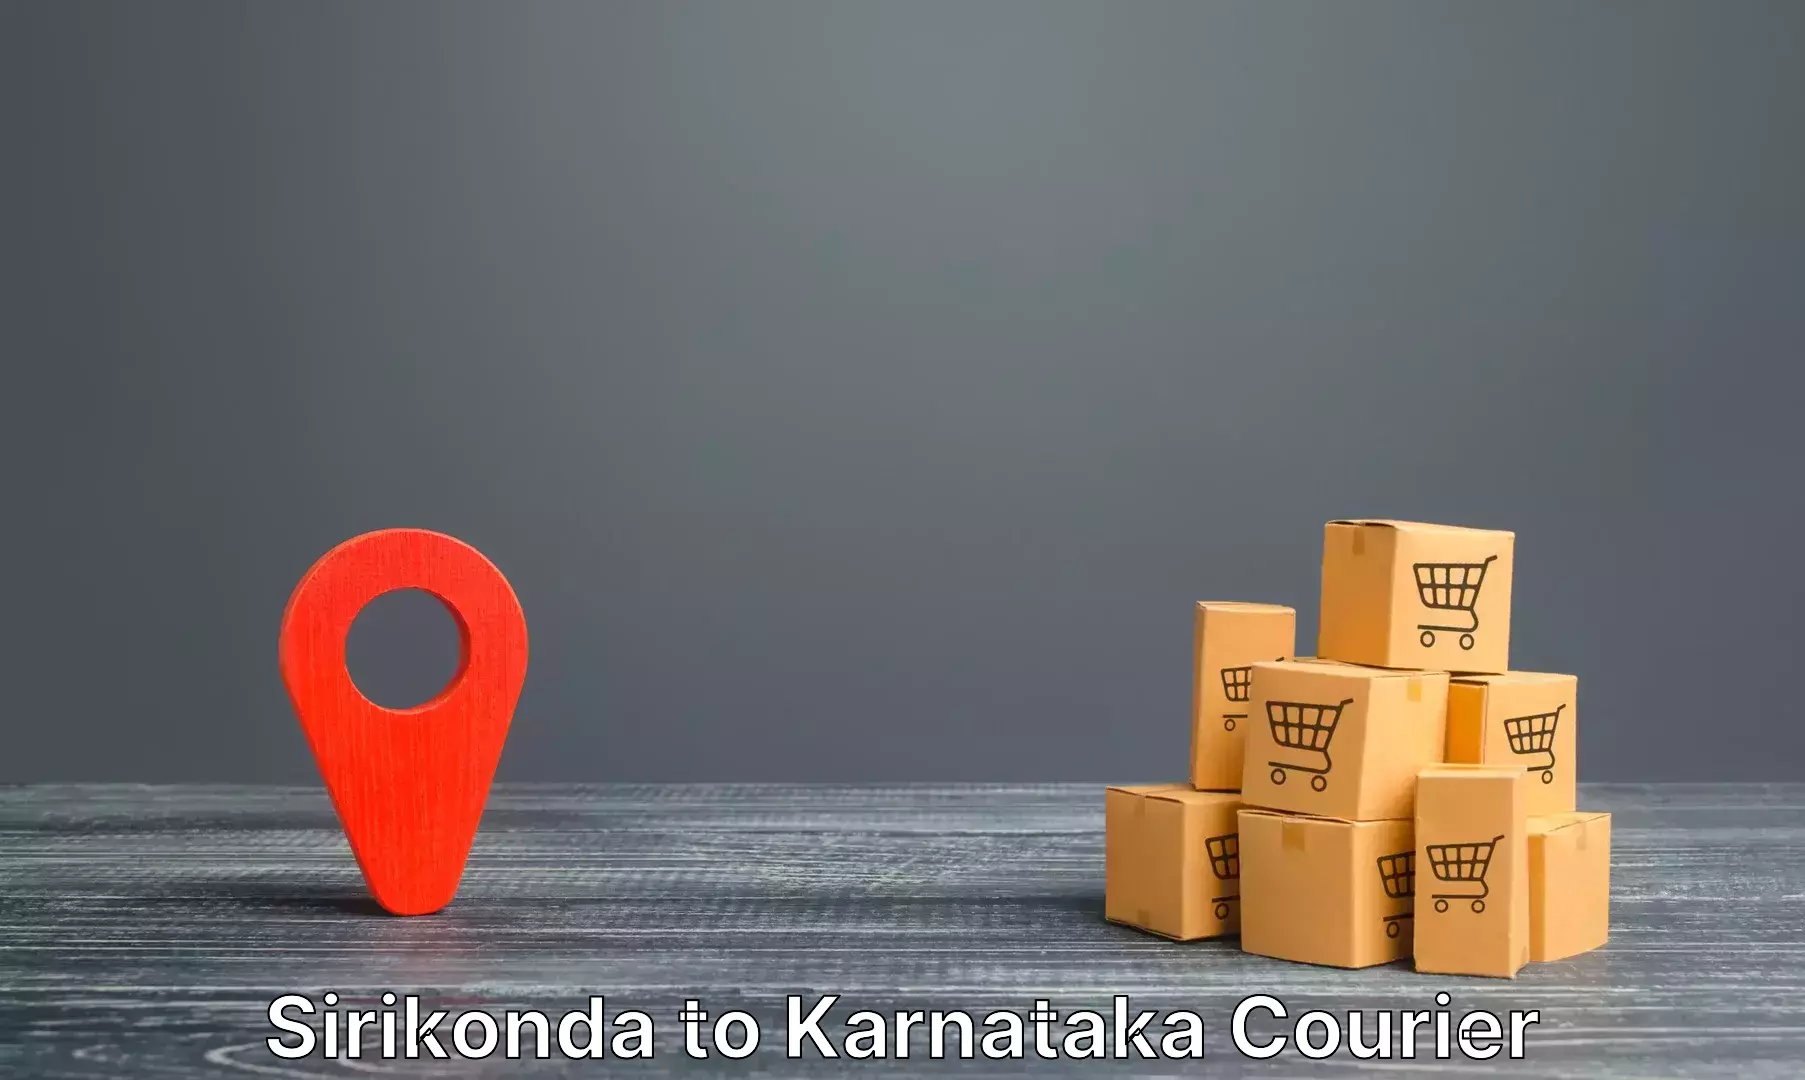 Luggage shipment tracking Sirikonda to Hagaribommanahalli